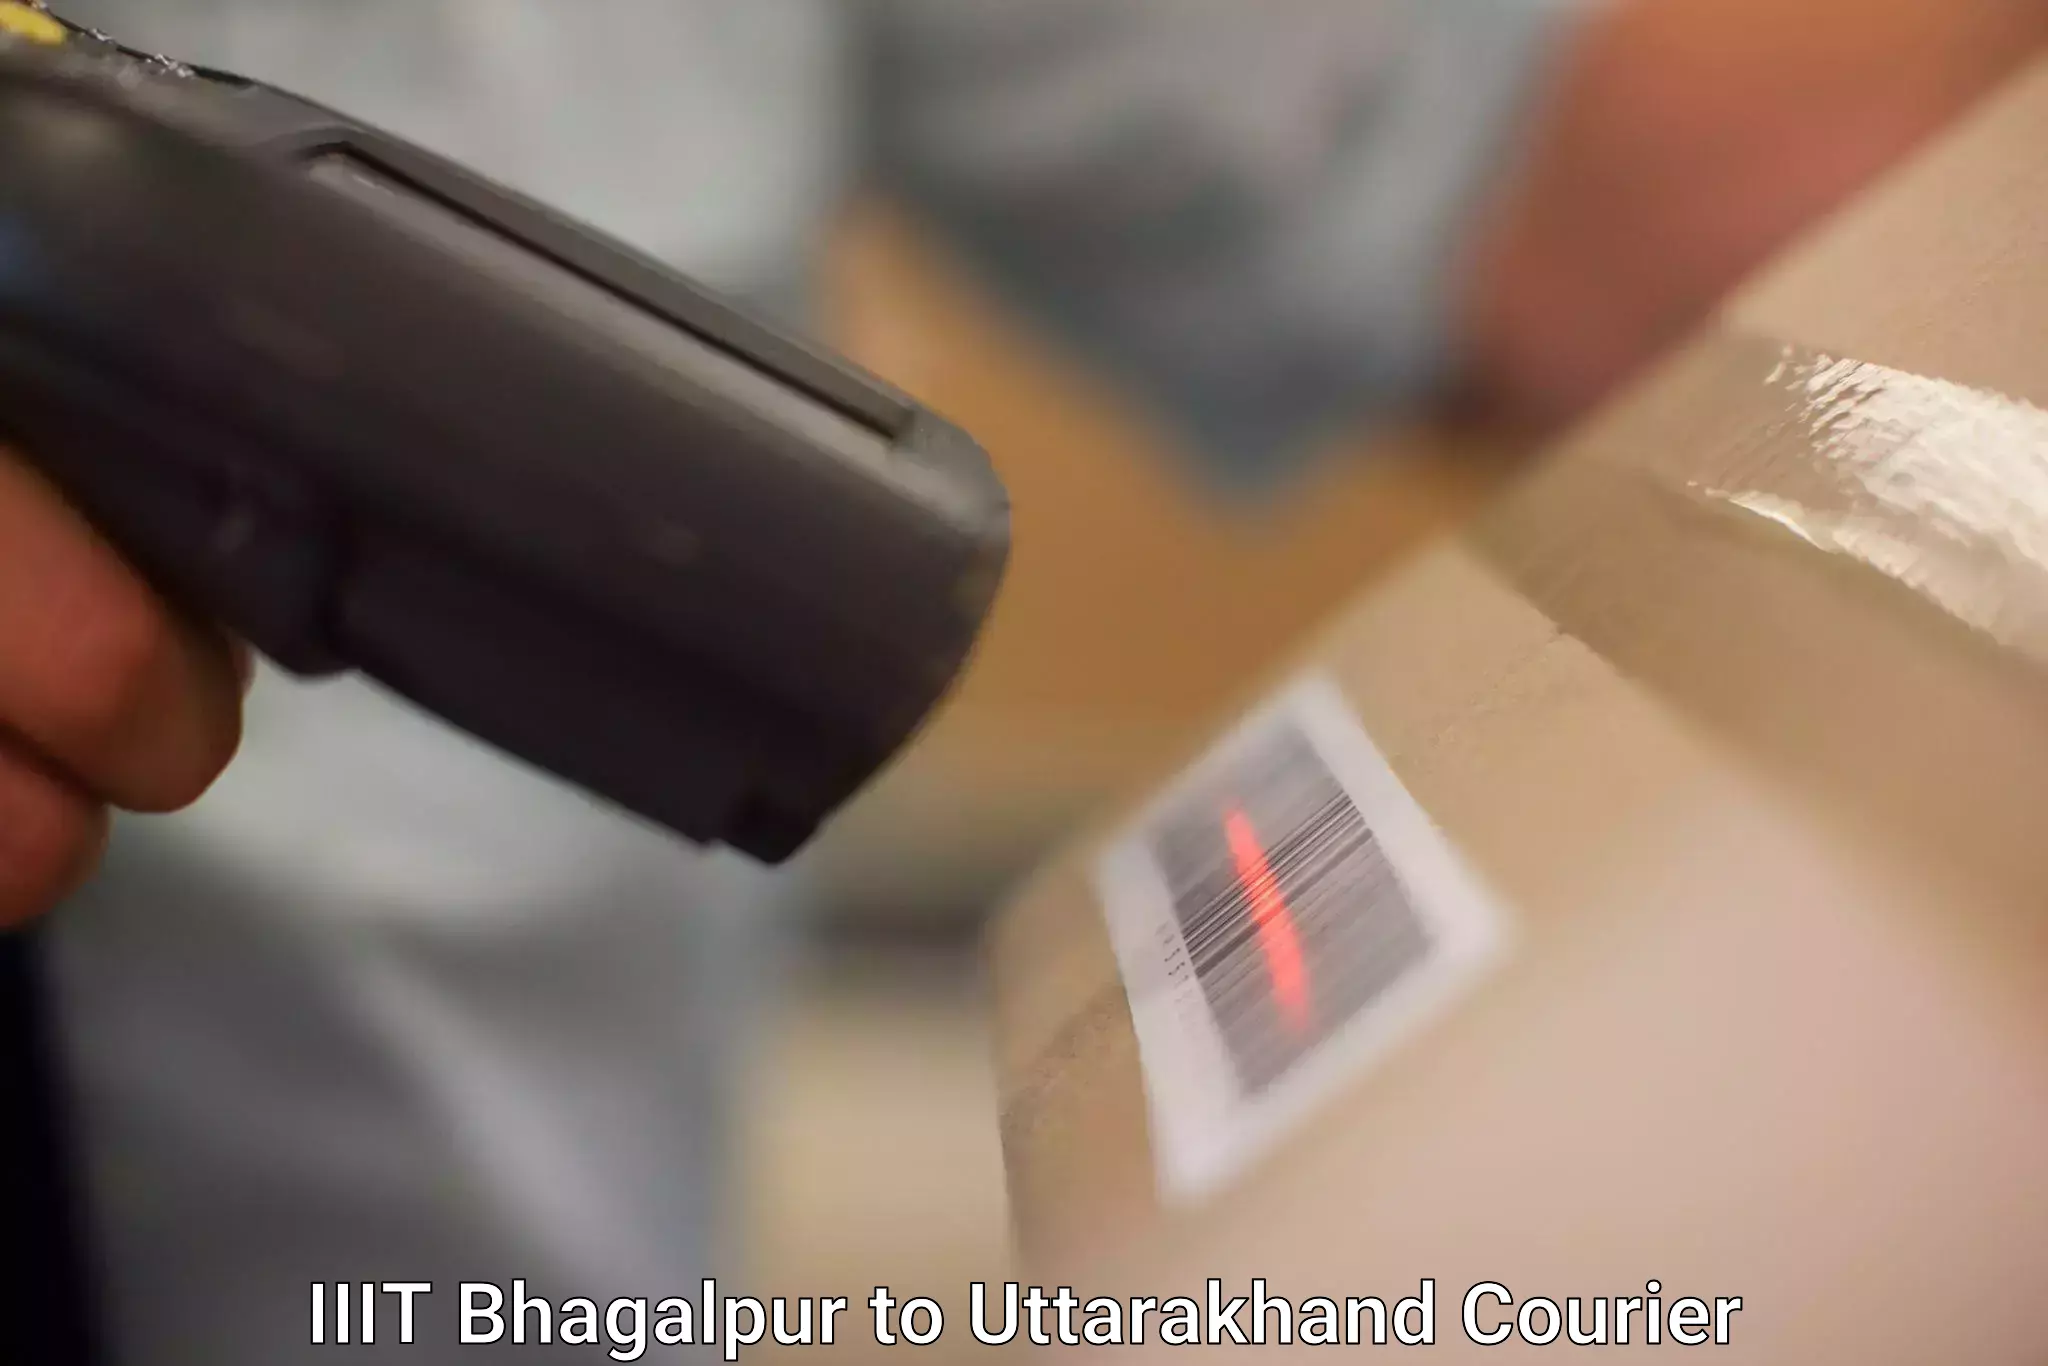 User-friendly delivery service IIIT Bhagalpur to Uttarakhand